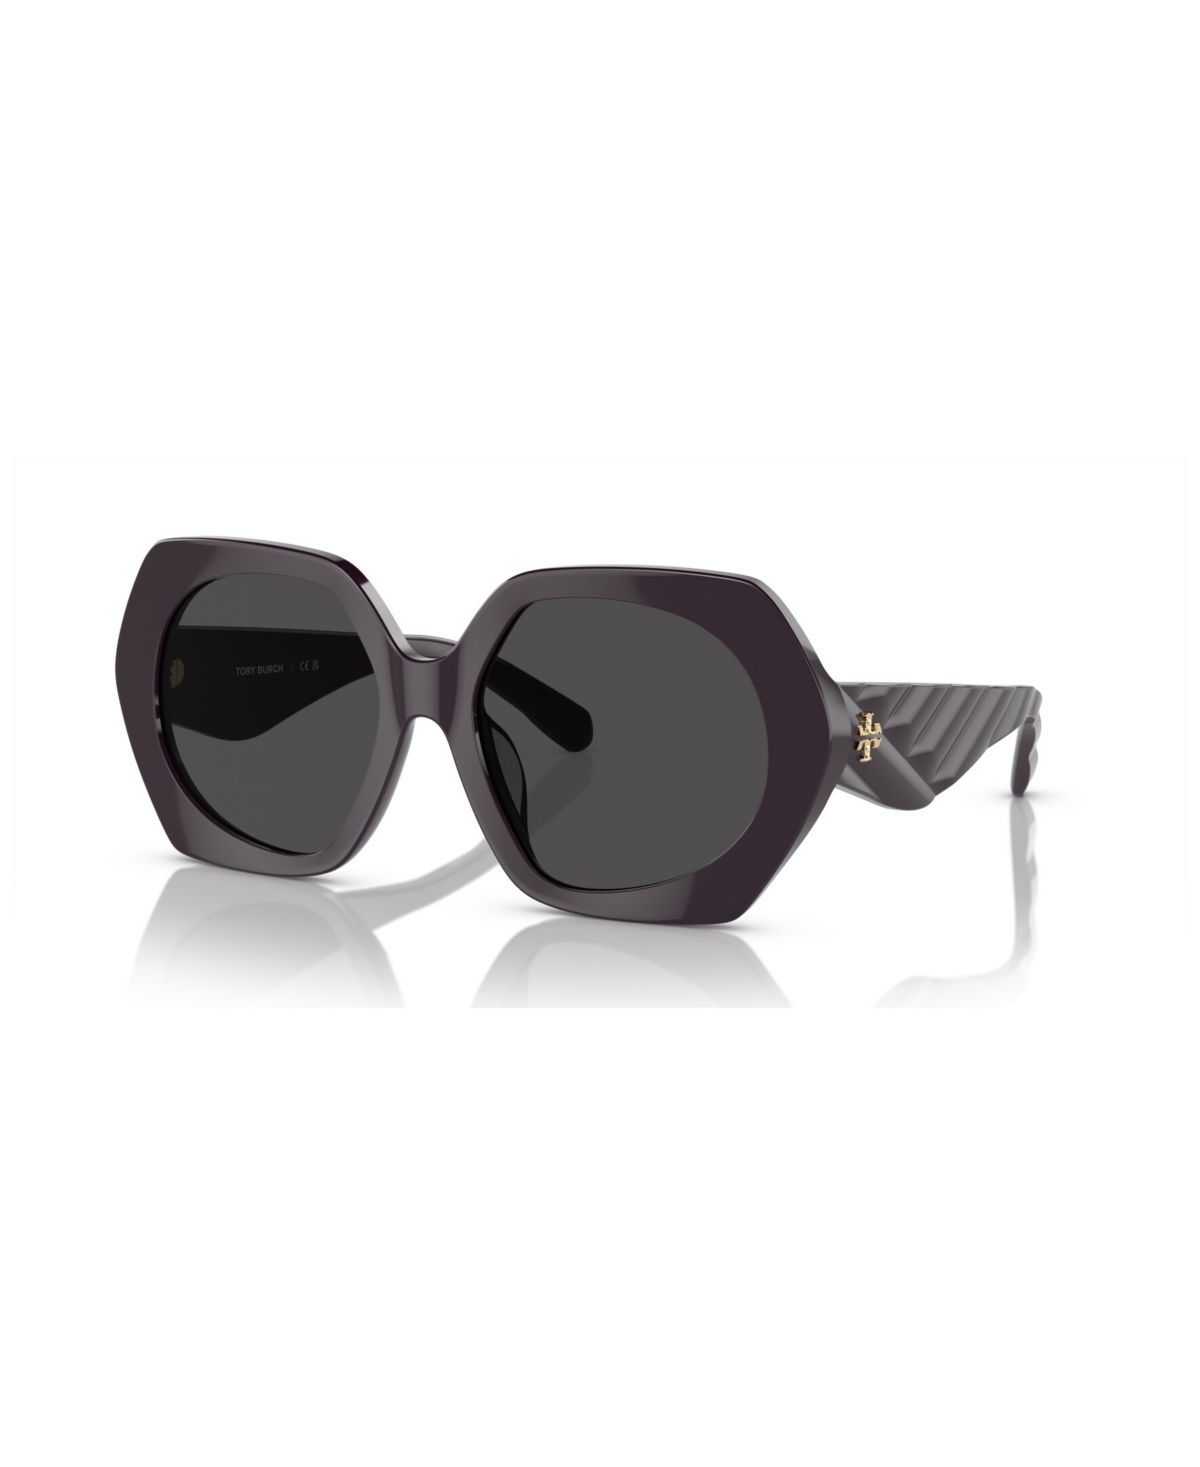 Tory Burch Women's Sunglasses Ty7195u In Bordeaux